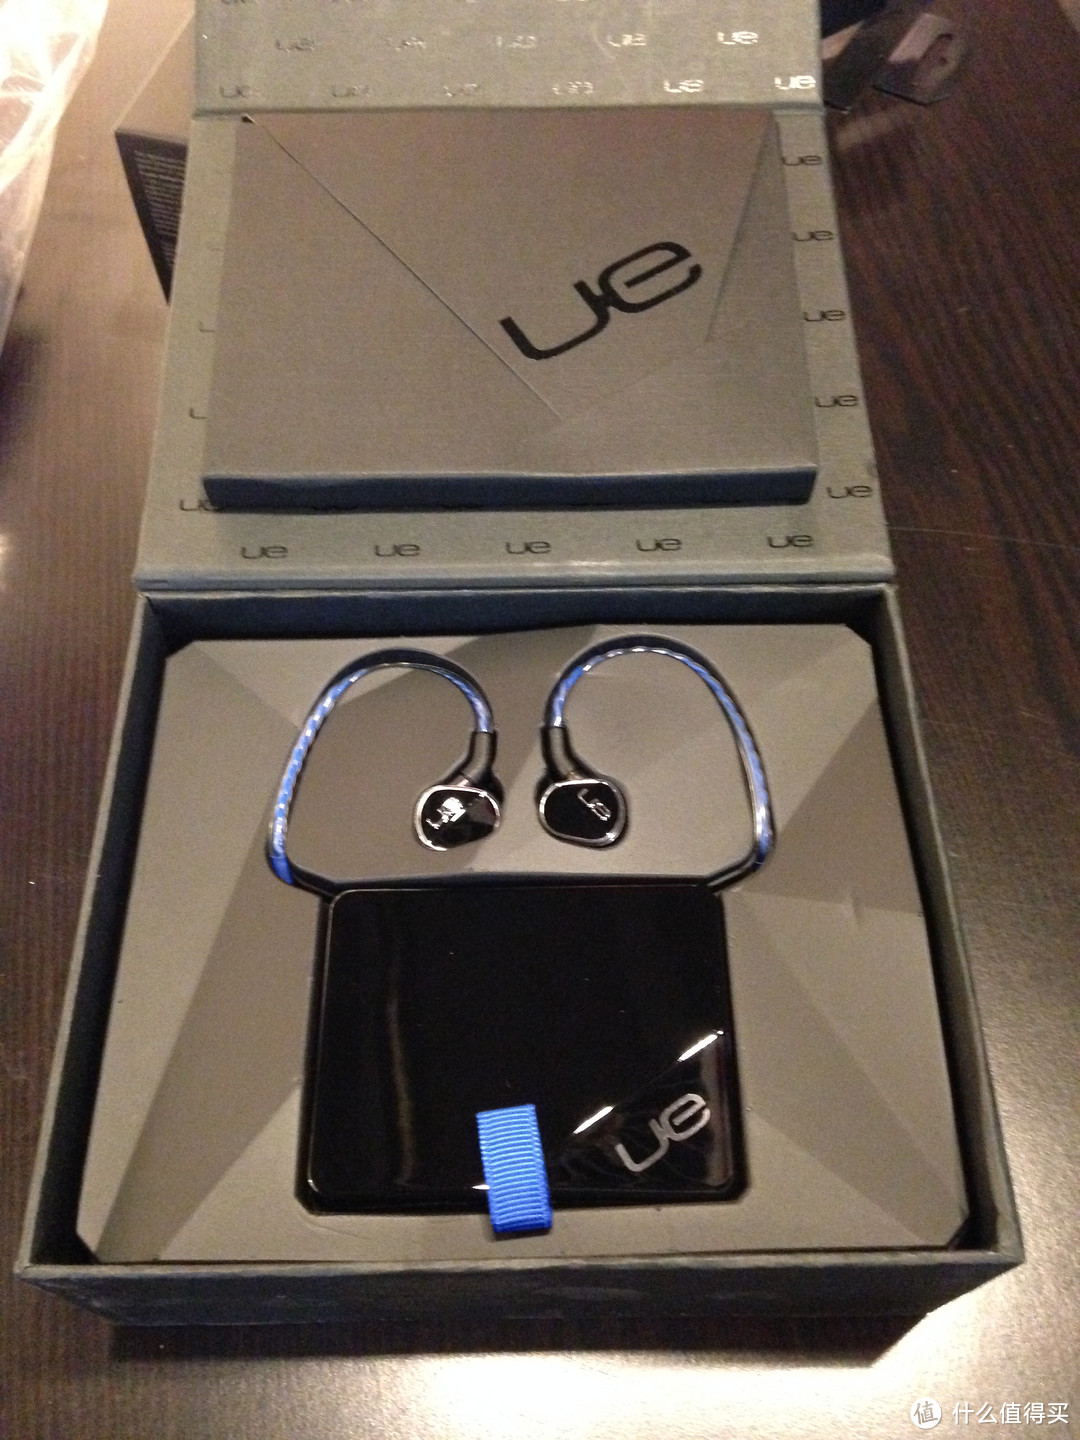 双十一买进 Logitech 罗技 UE900四重动铁单元 入耳式耳机 开箱